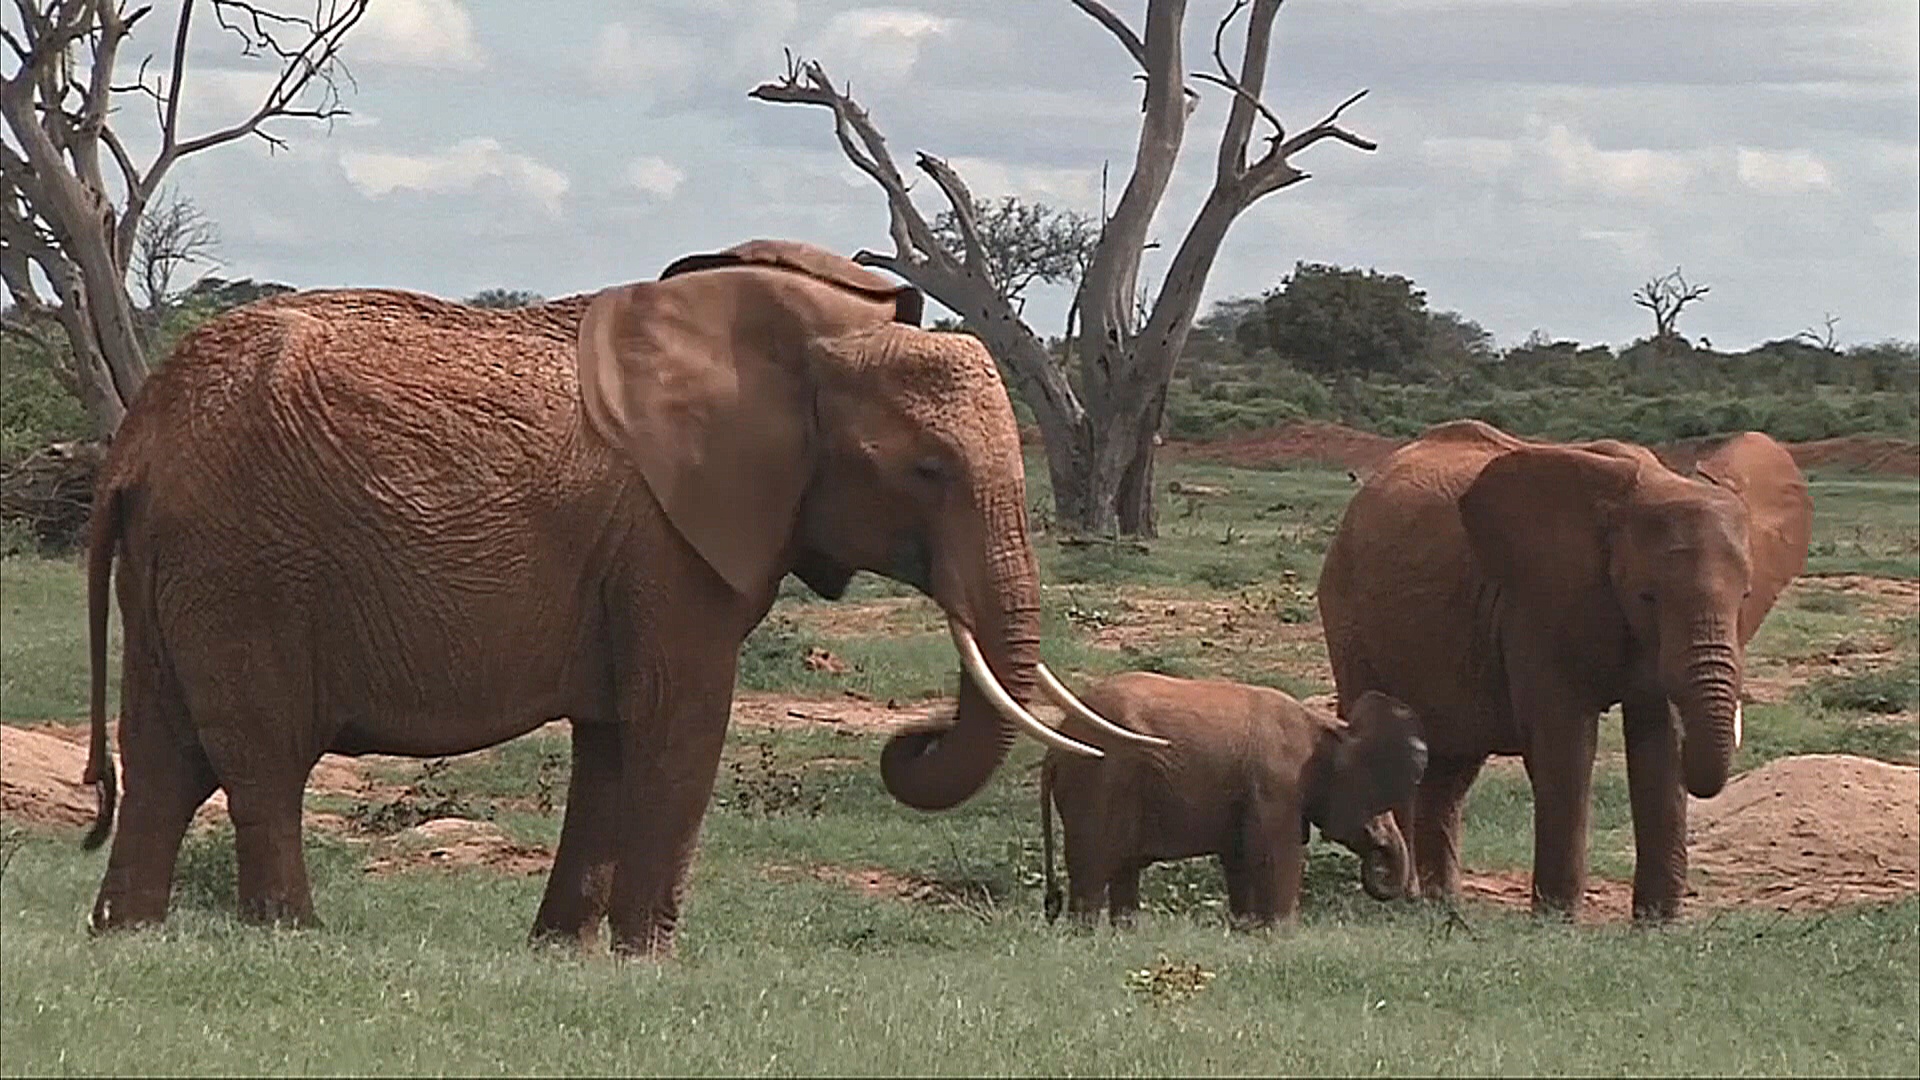 Африканские слоны, возможно, называют друг друга уникальными именами